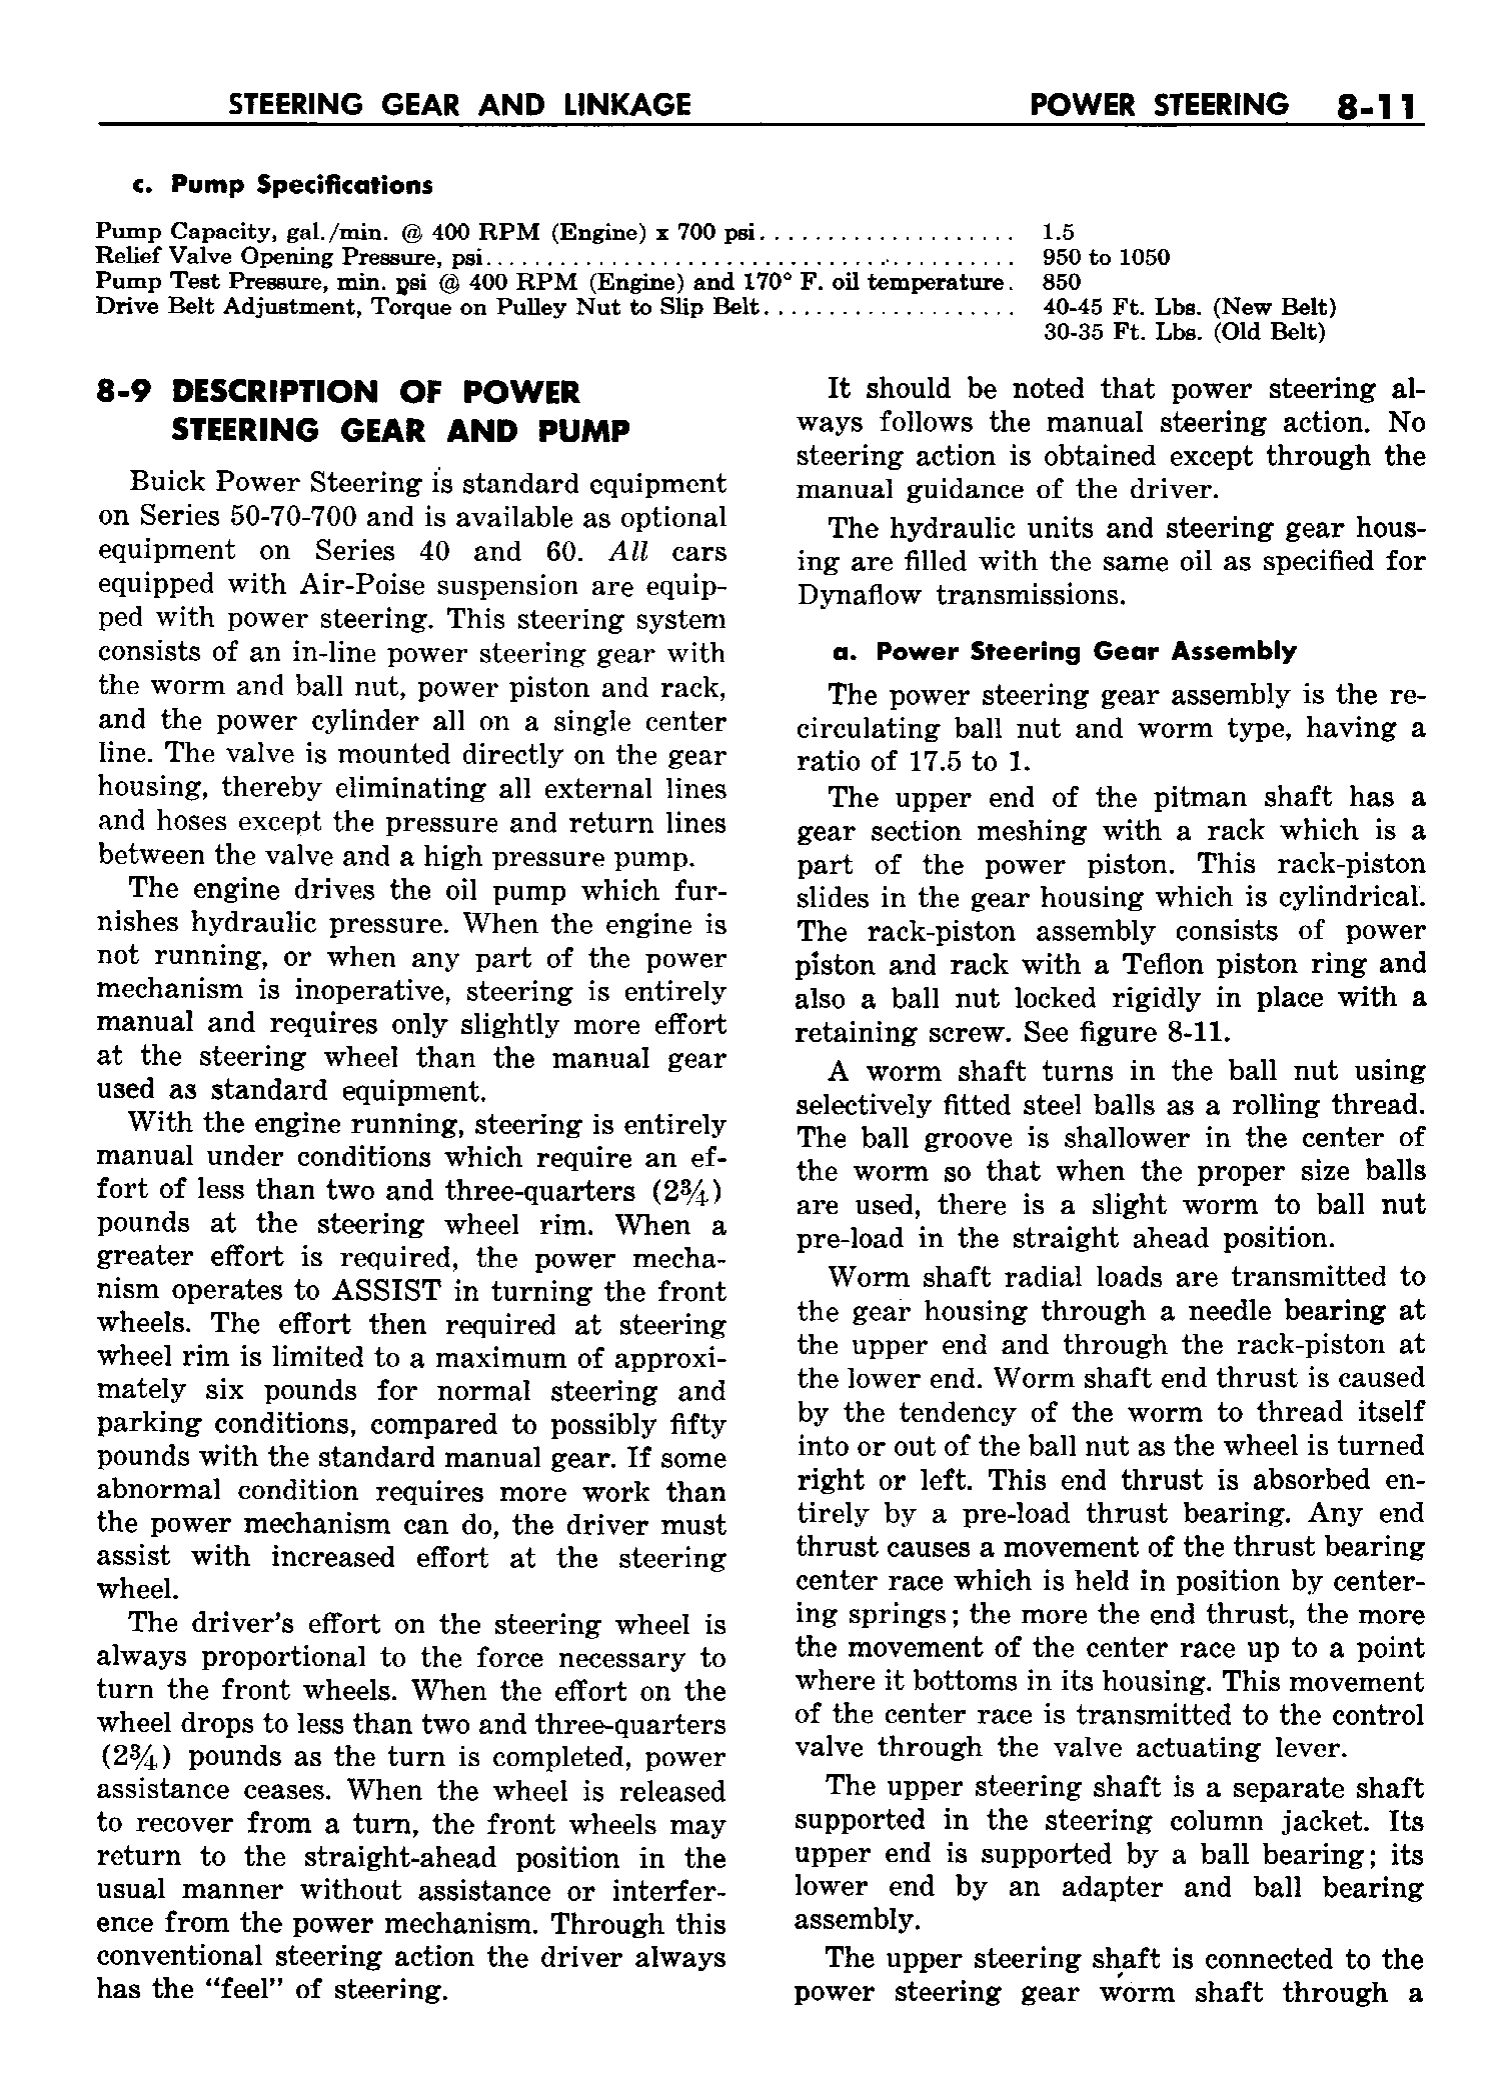 n_09 1958 Buick Shop Manual - Steering_11.jpg